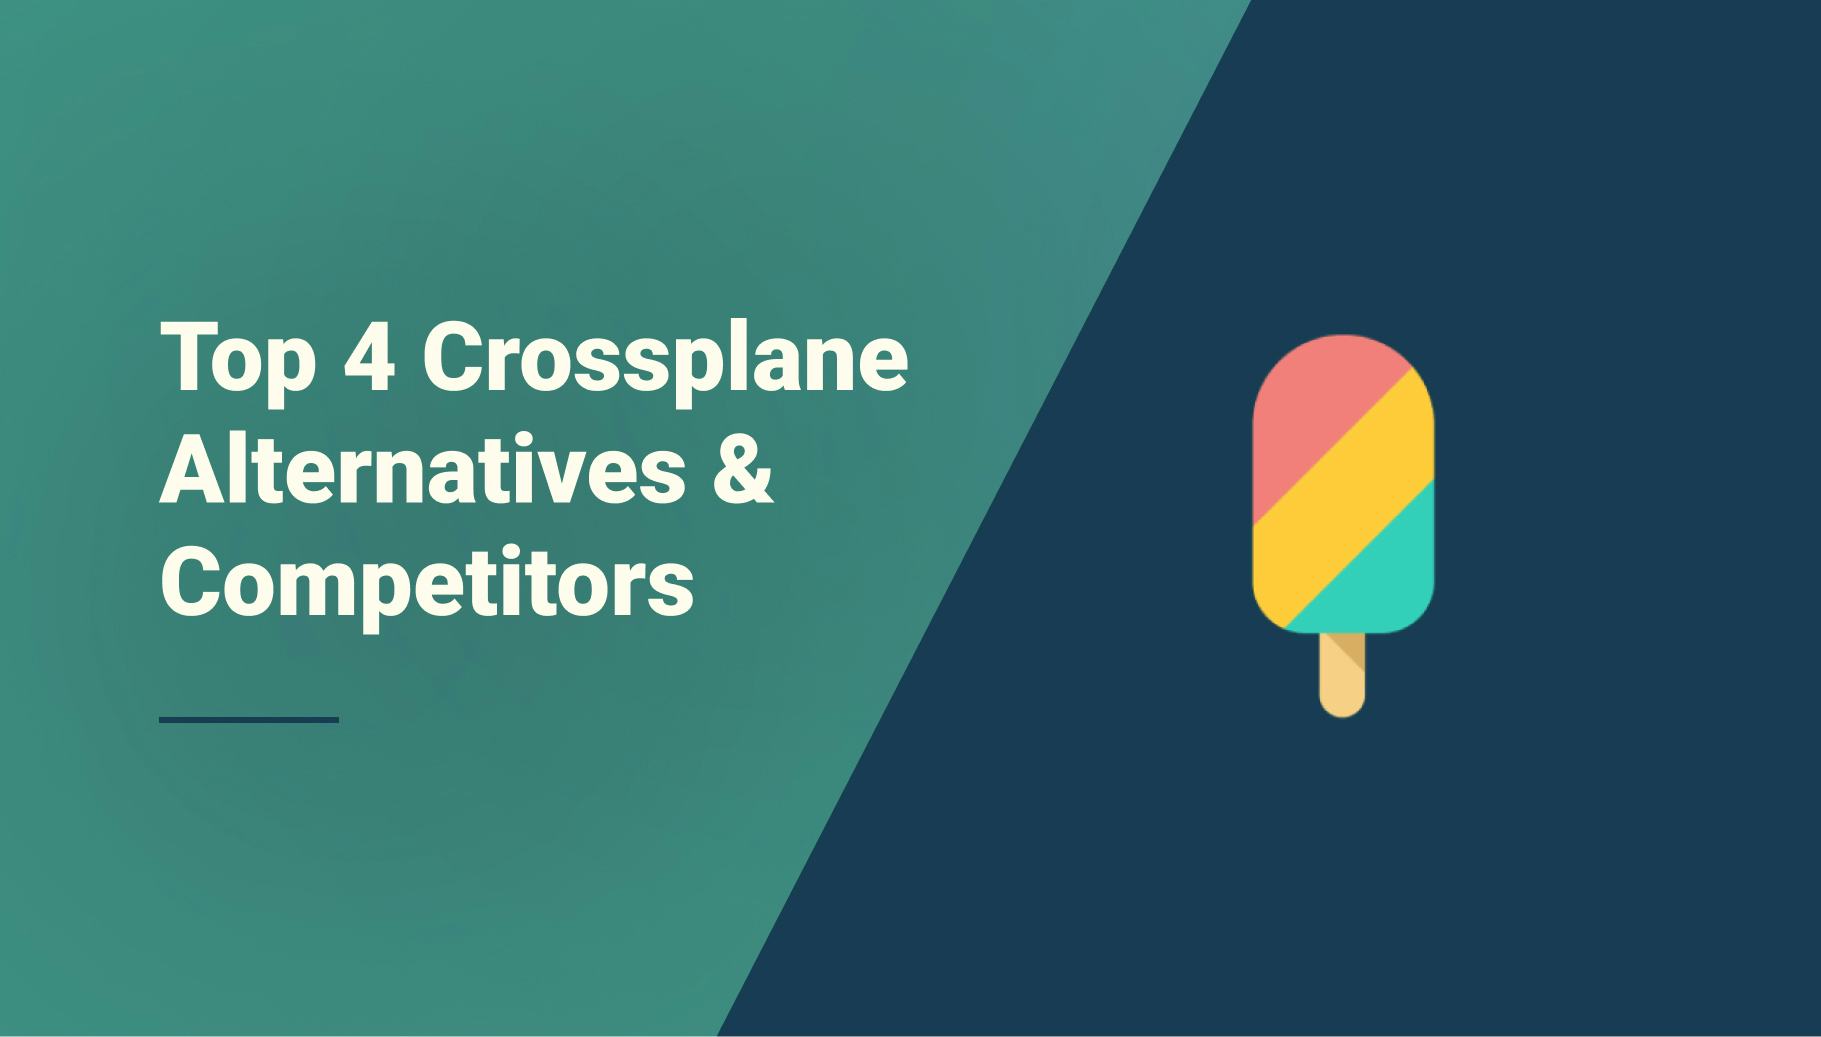 Top 4 Crossplane Alternatives & Competitors - Qovery